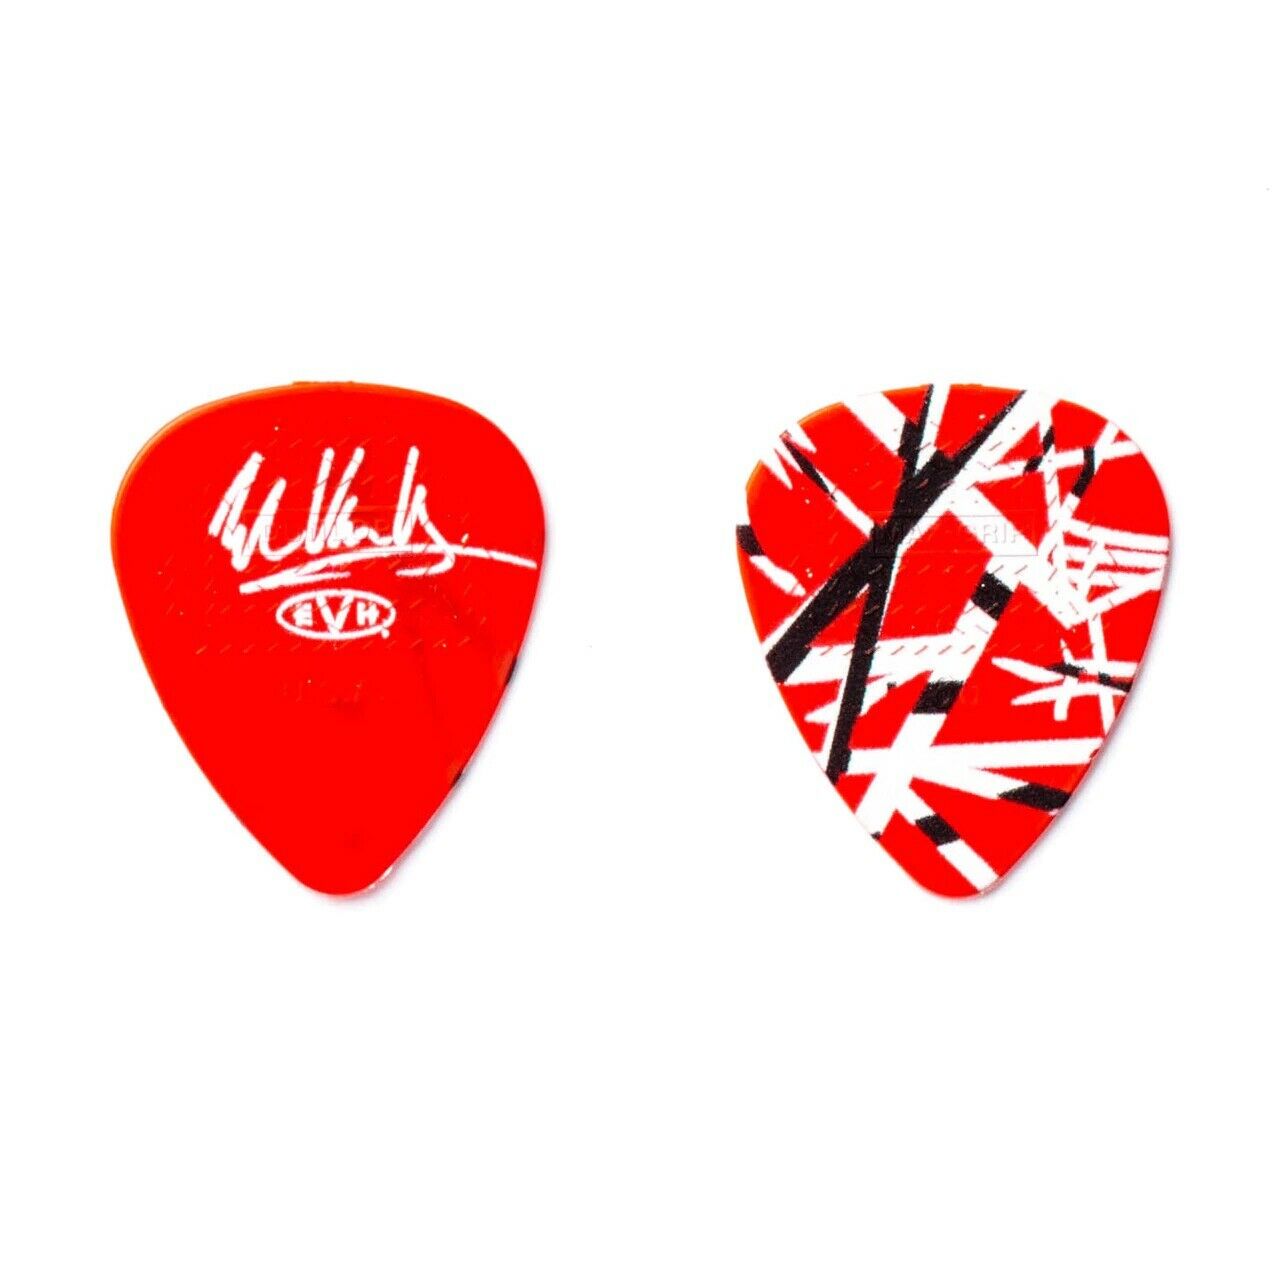 Eddie Van Halen Evh Frankenstrat Red/white/black Striped Signature Guitar Pick